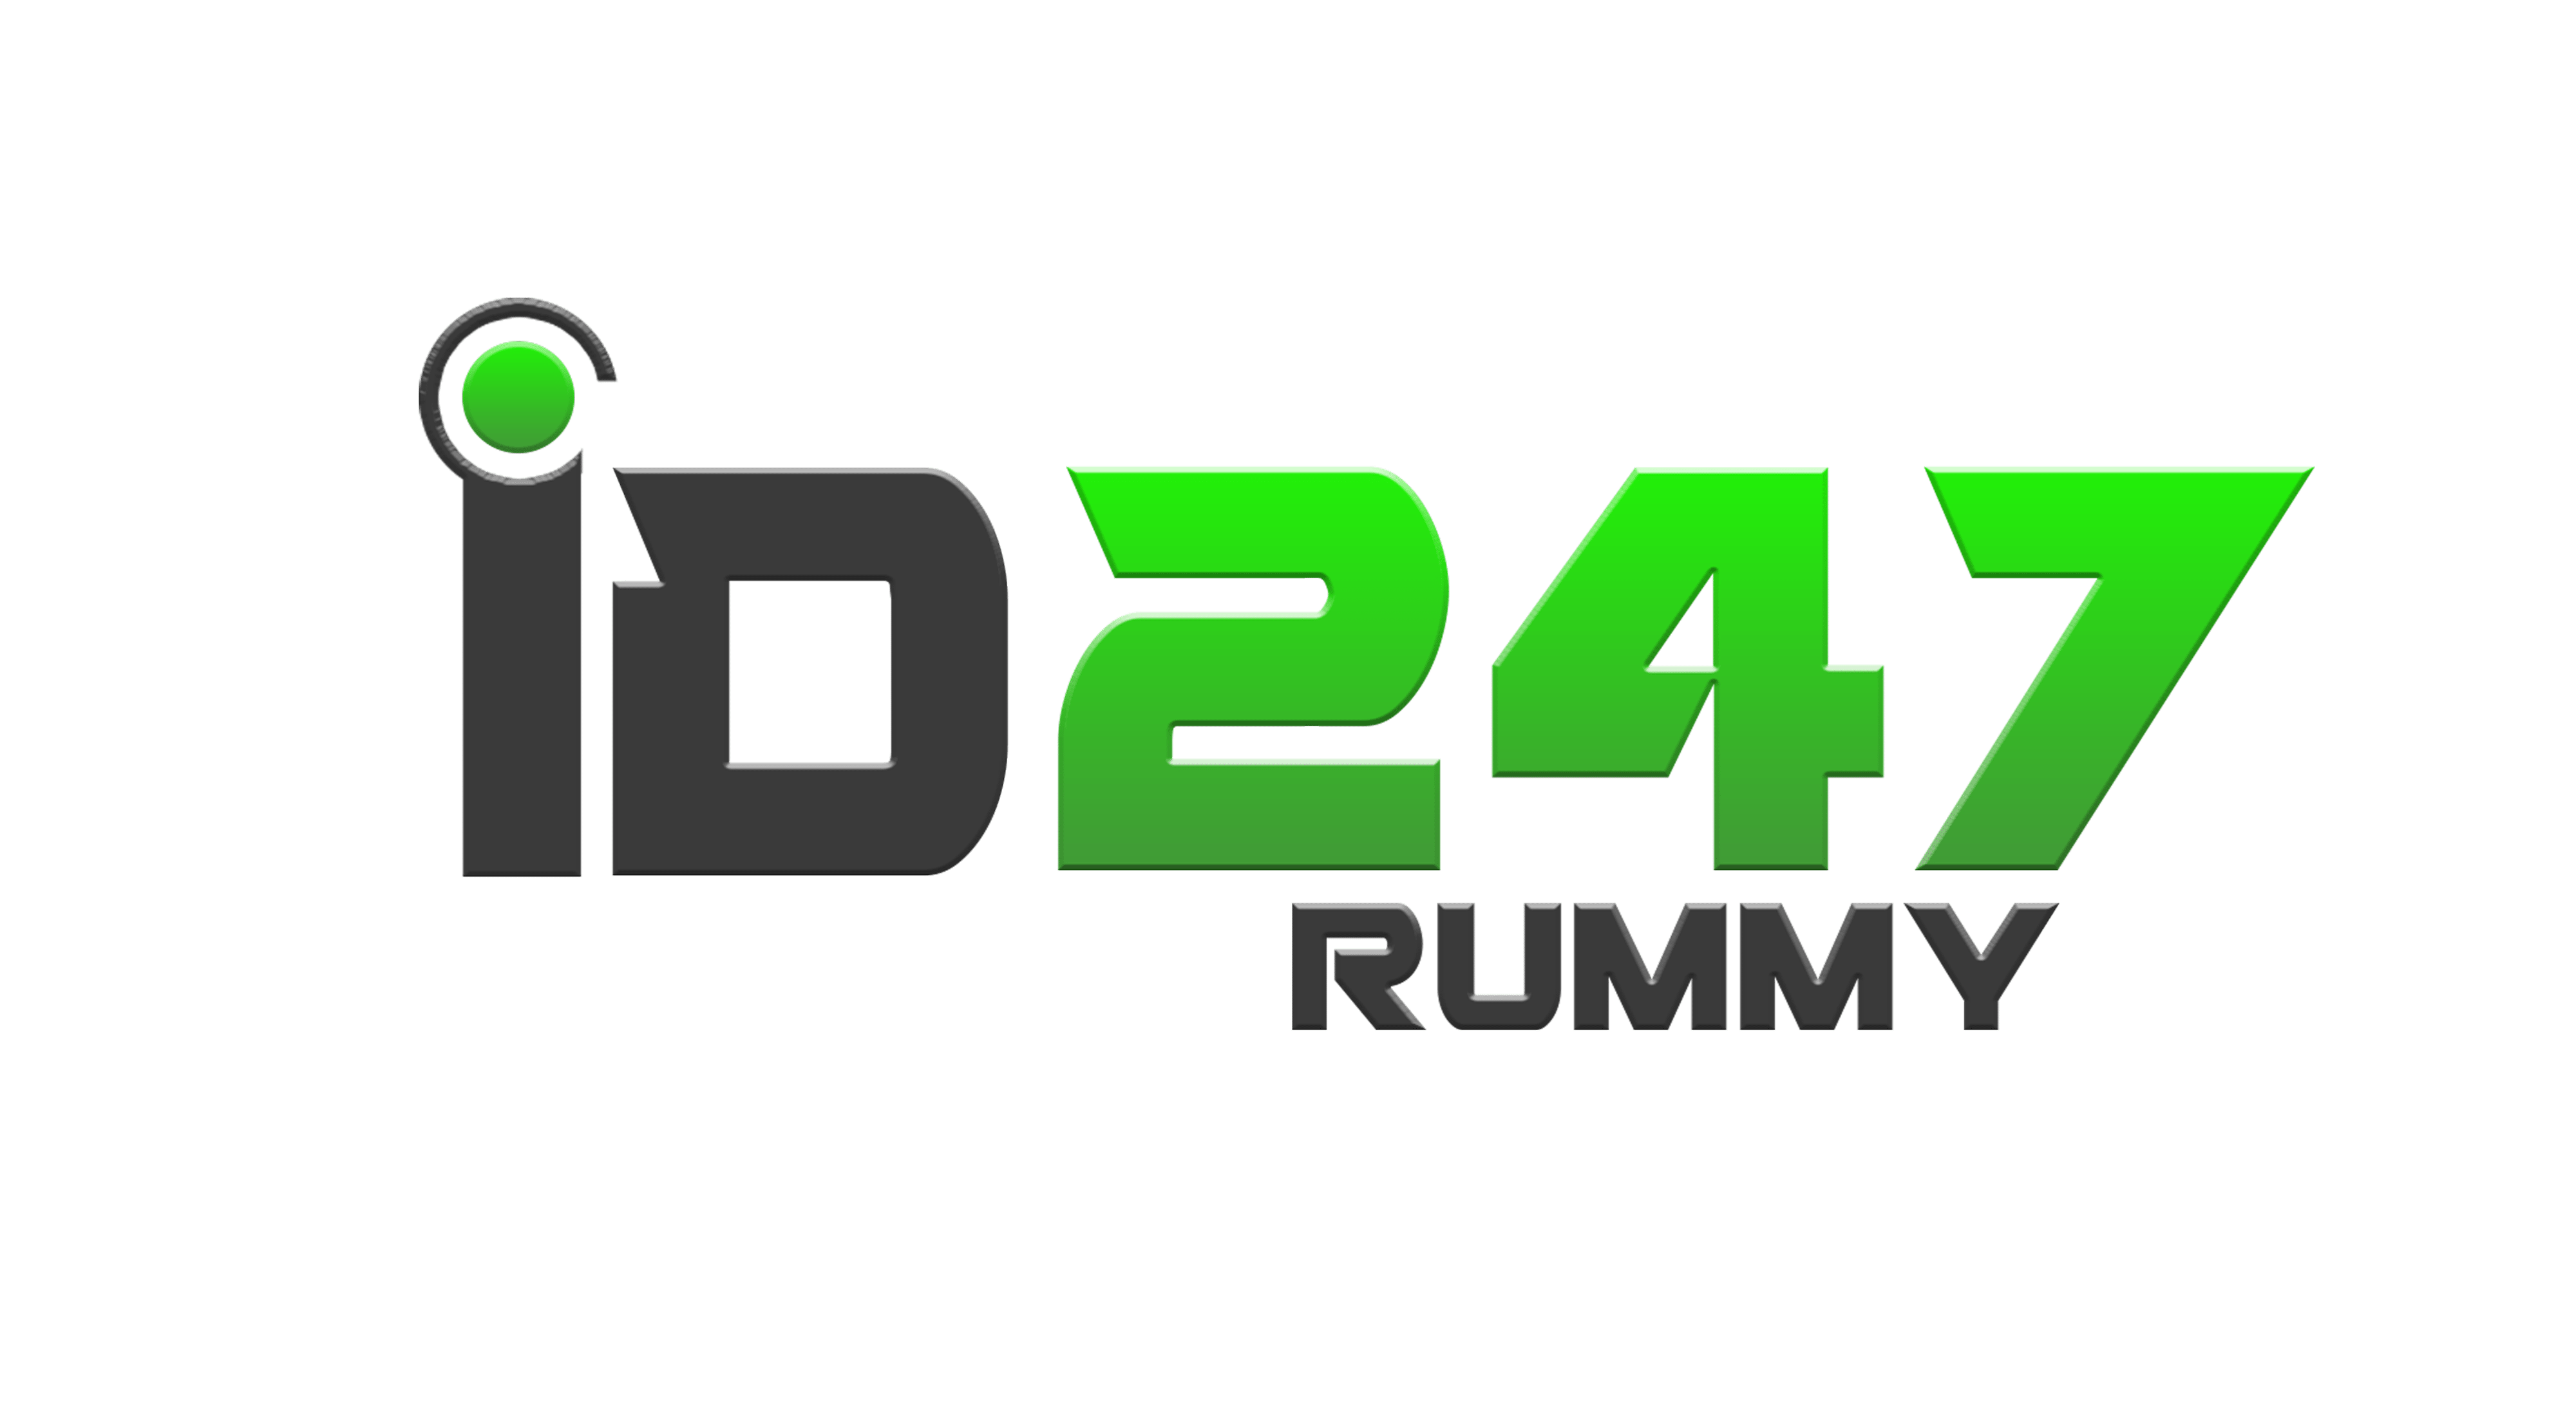 online rummy platform in India ID247rummy